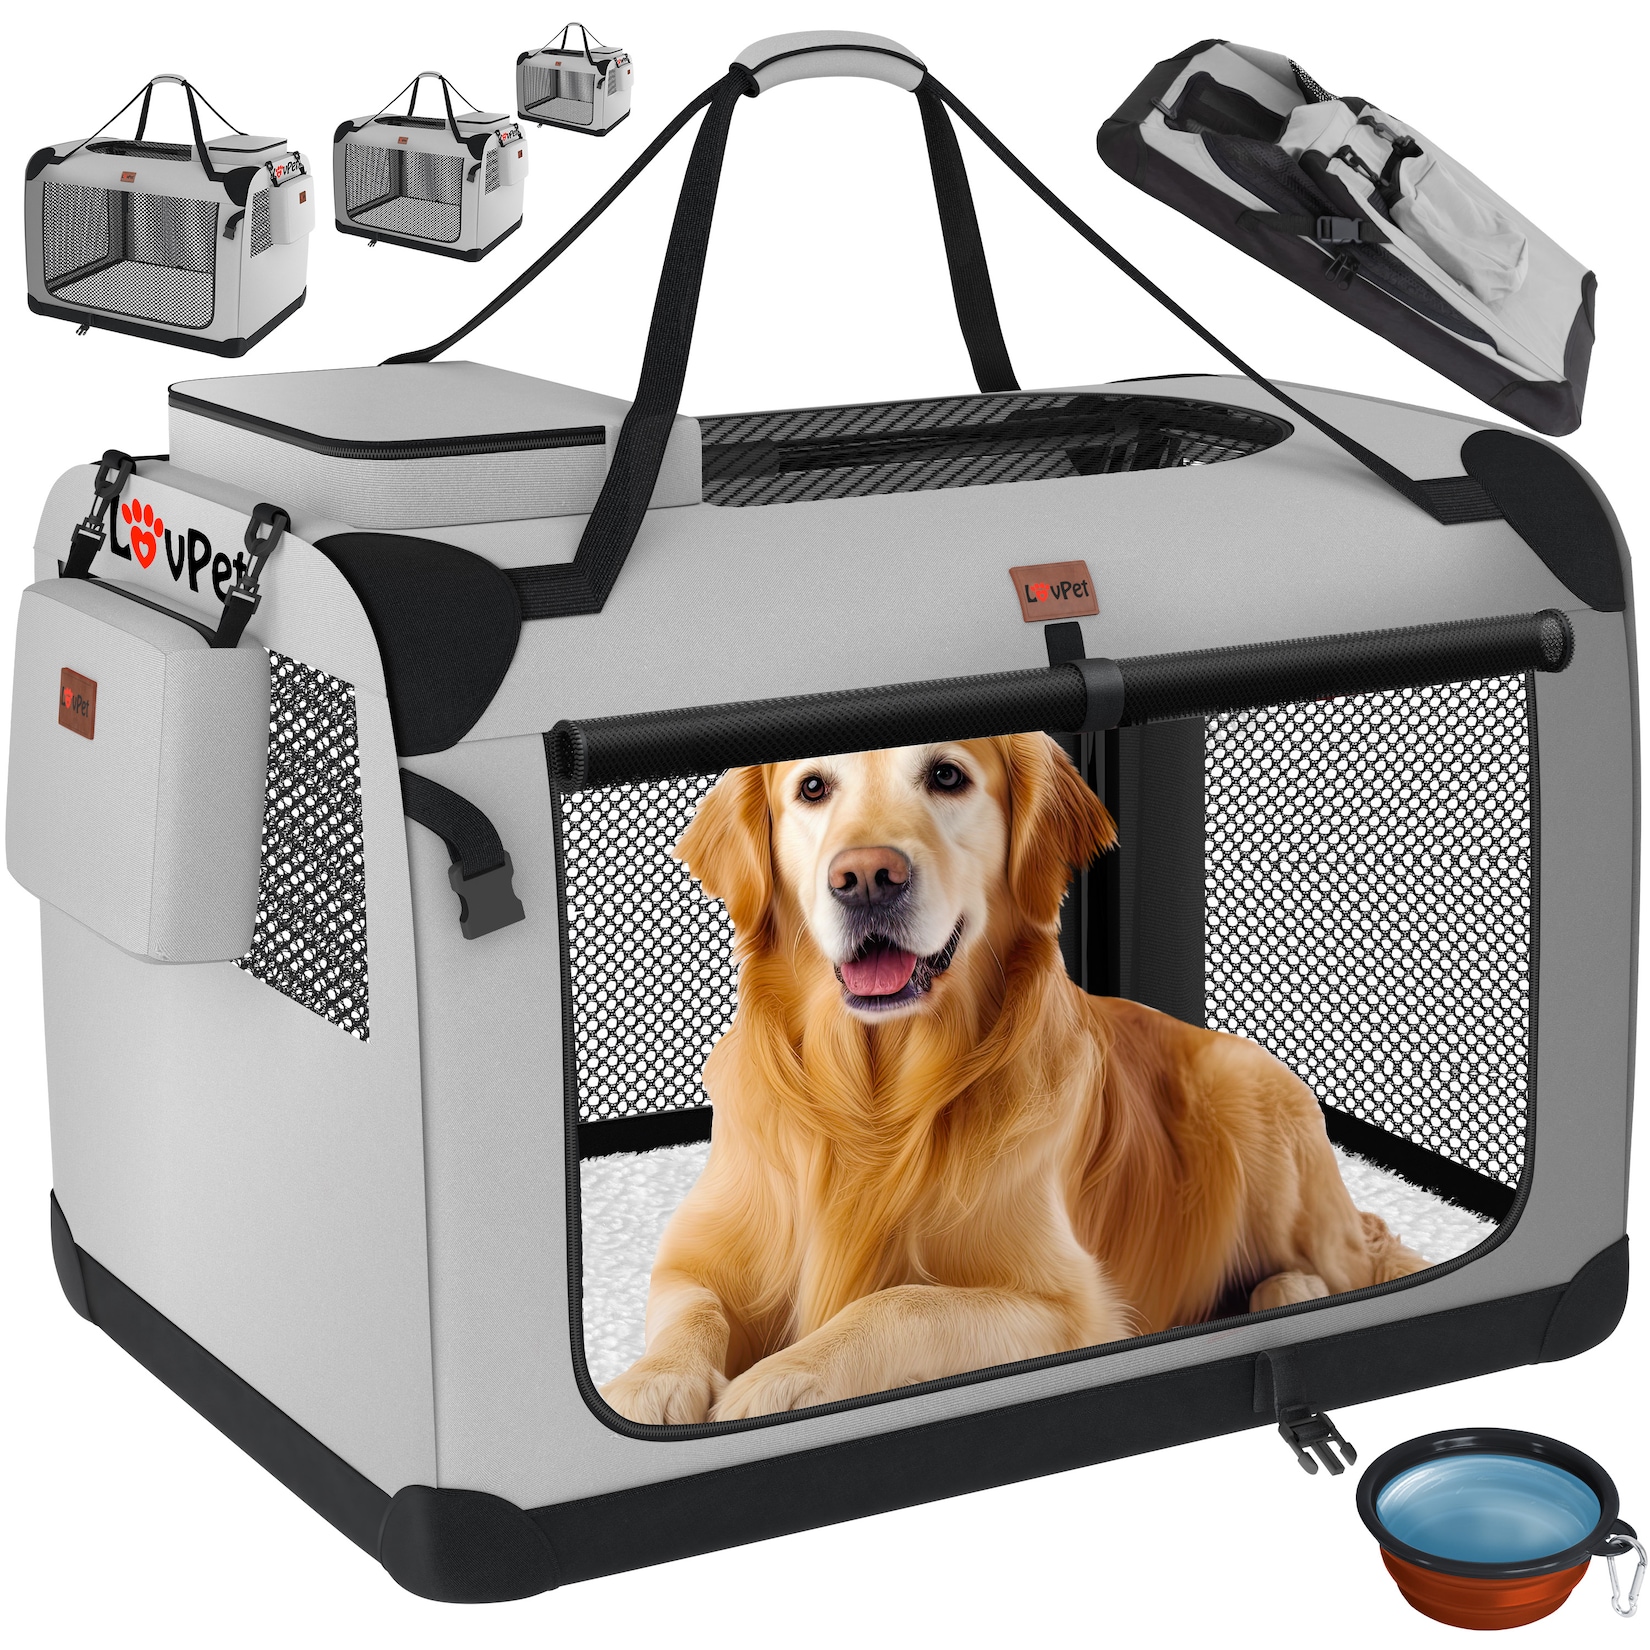 LOVPET® Hundebox Hundetransportbox faltbar Inkl.Hundenapf Transporttasche Hundetasche Transportbox für Haustiere, Hunde 